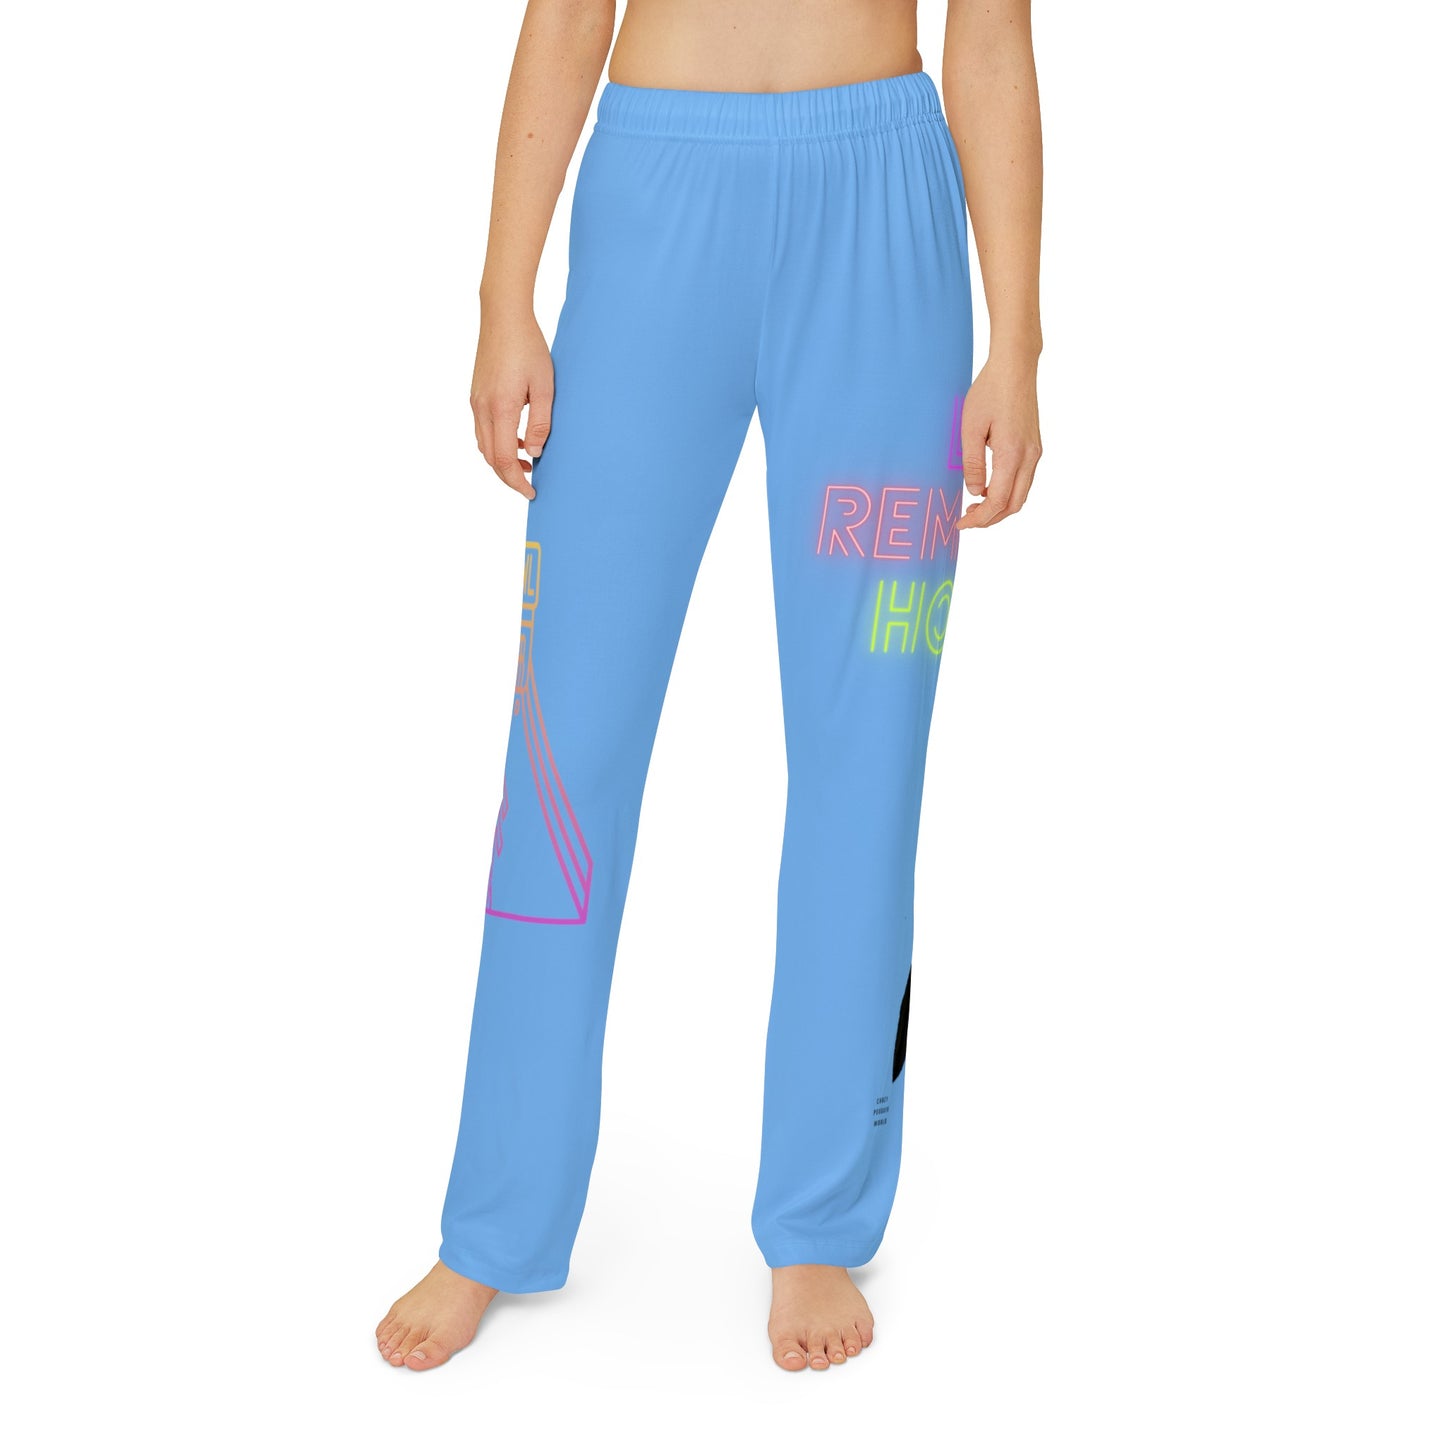 Kids Pajama Pants: Bowling Lite Blue